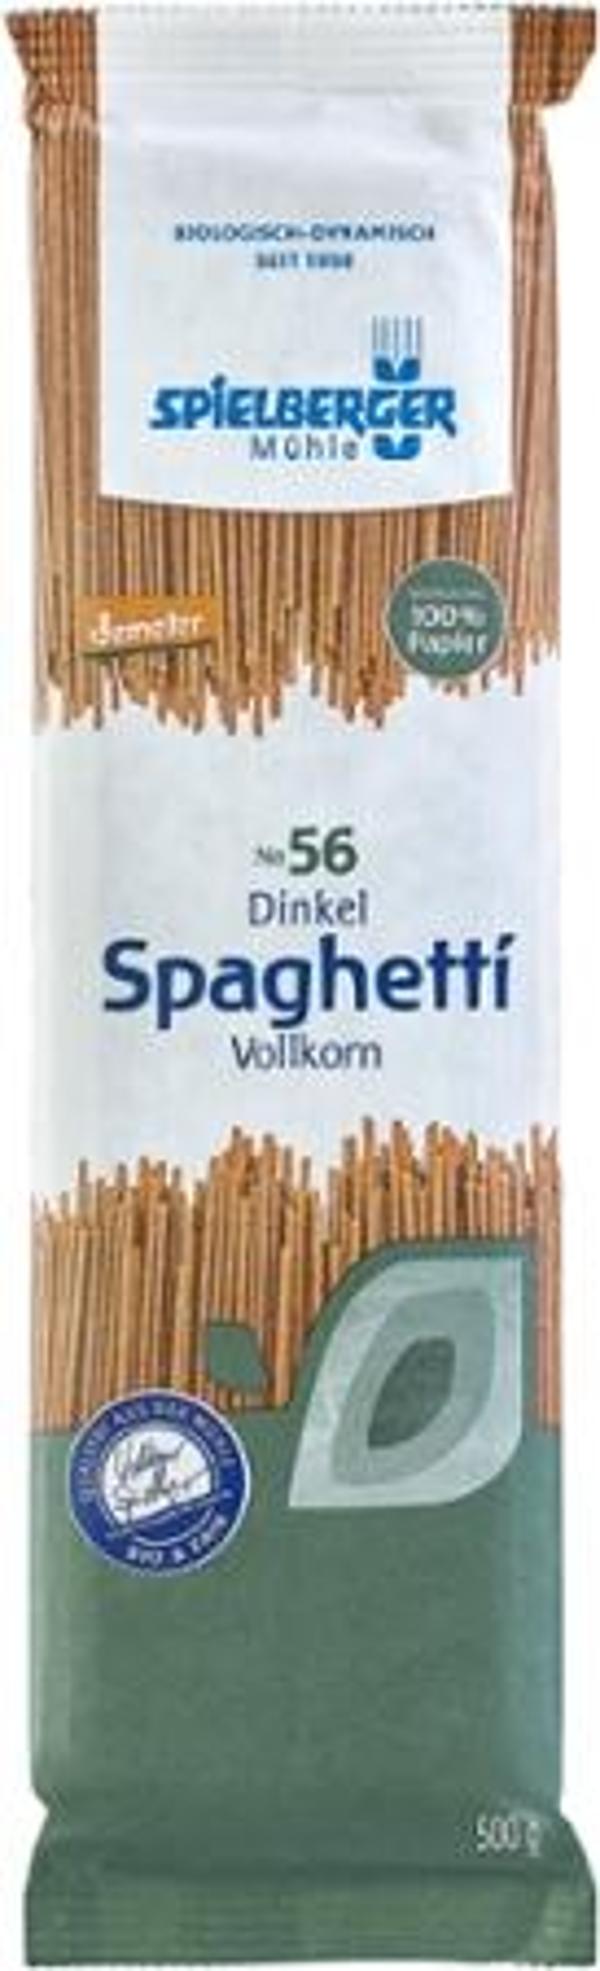 Produktfoto zu Dinkel Spaghetti VK